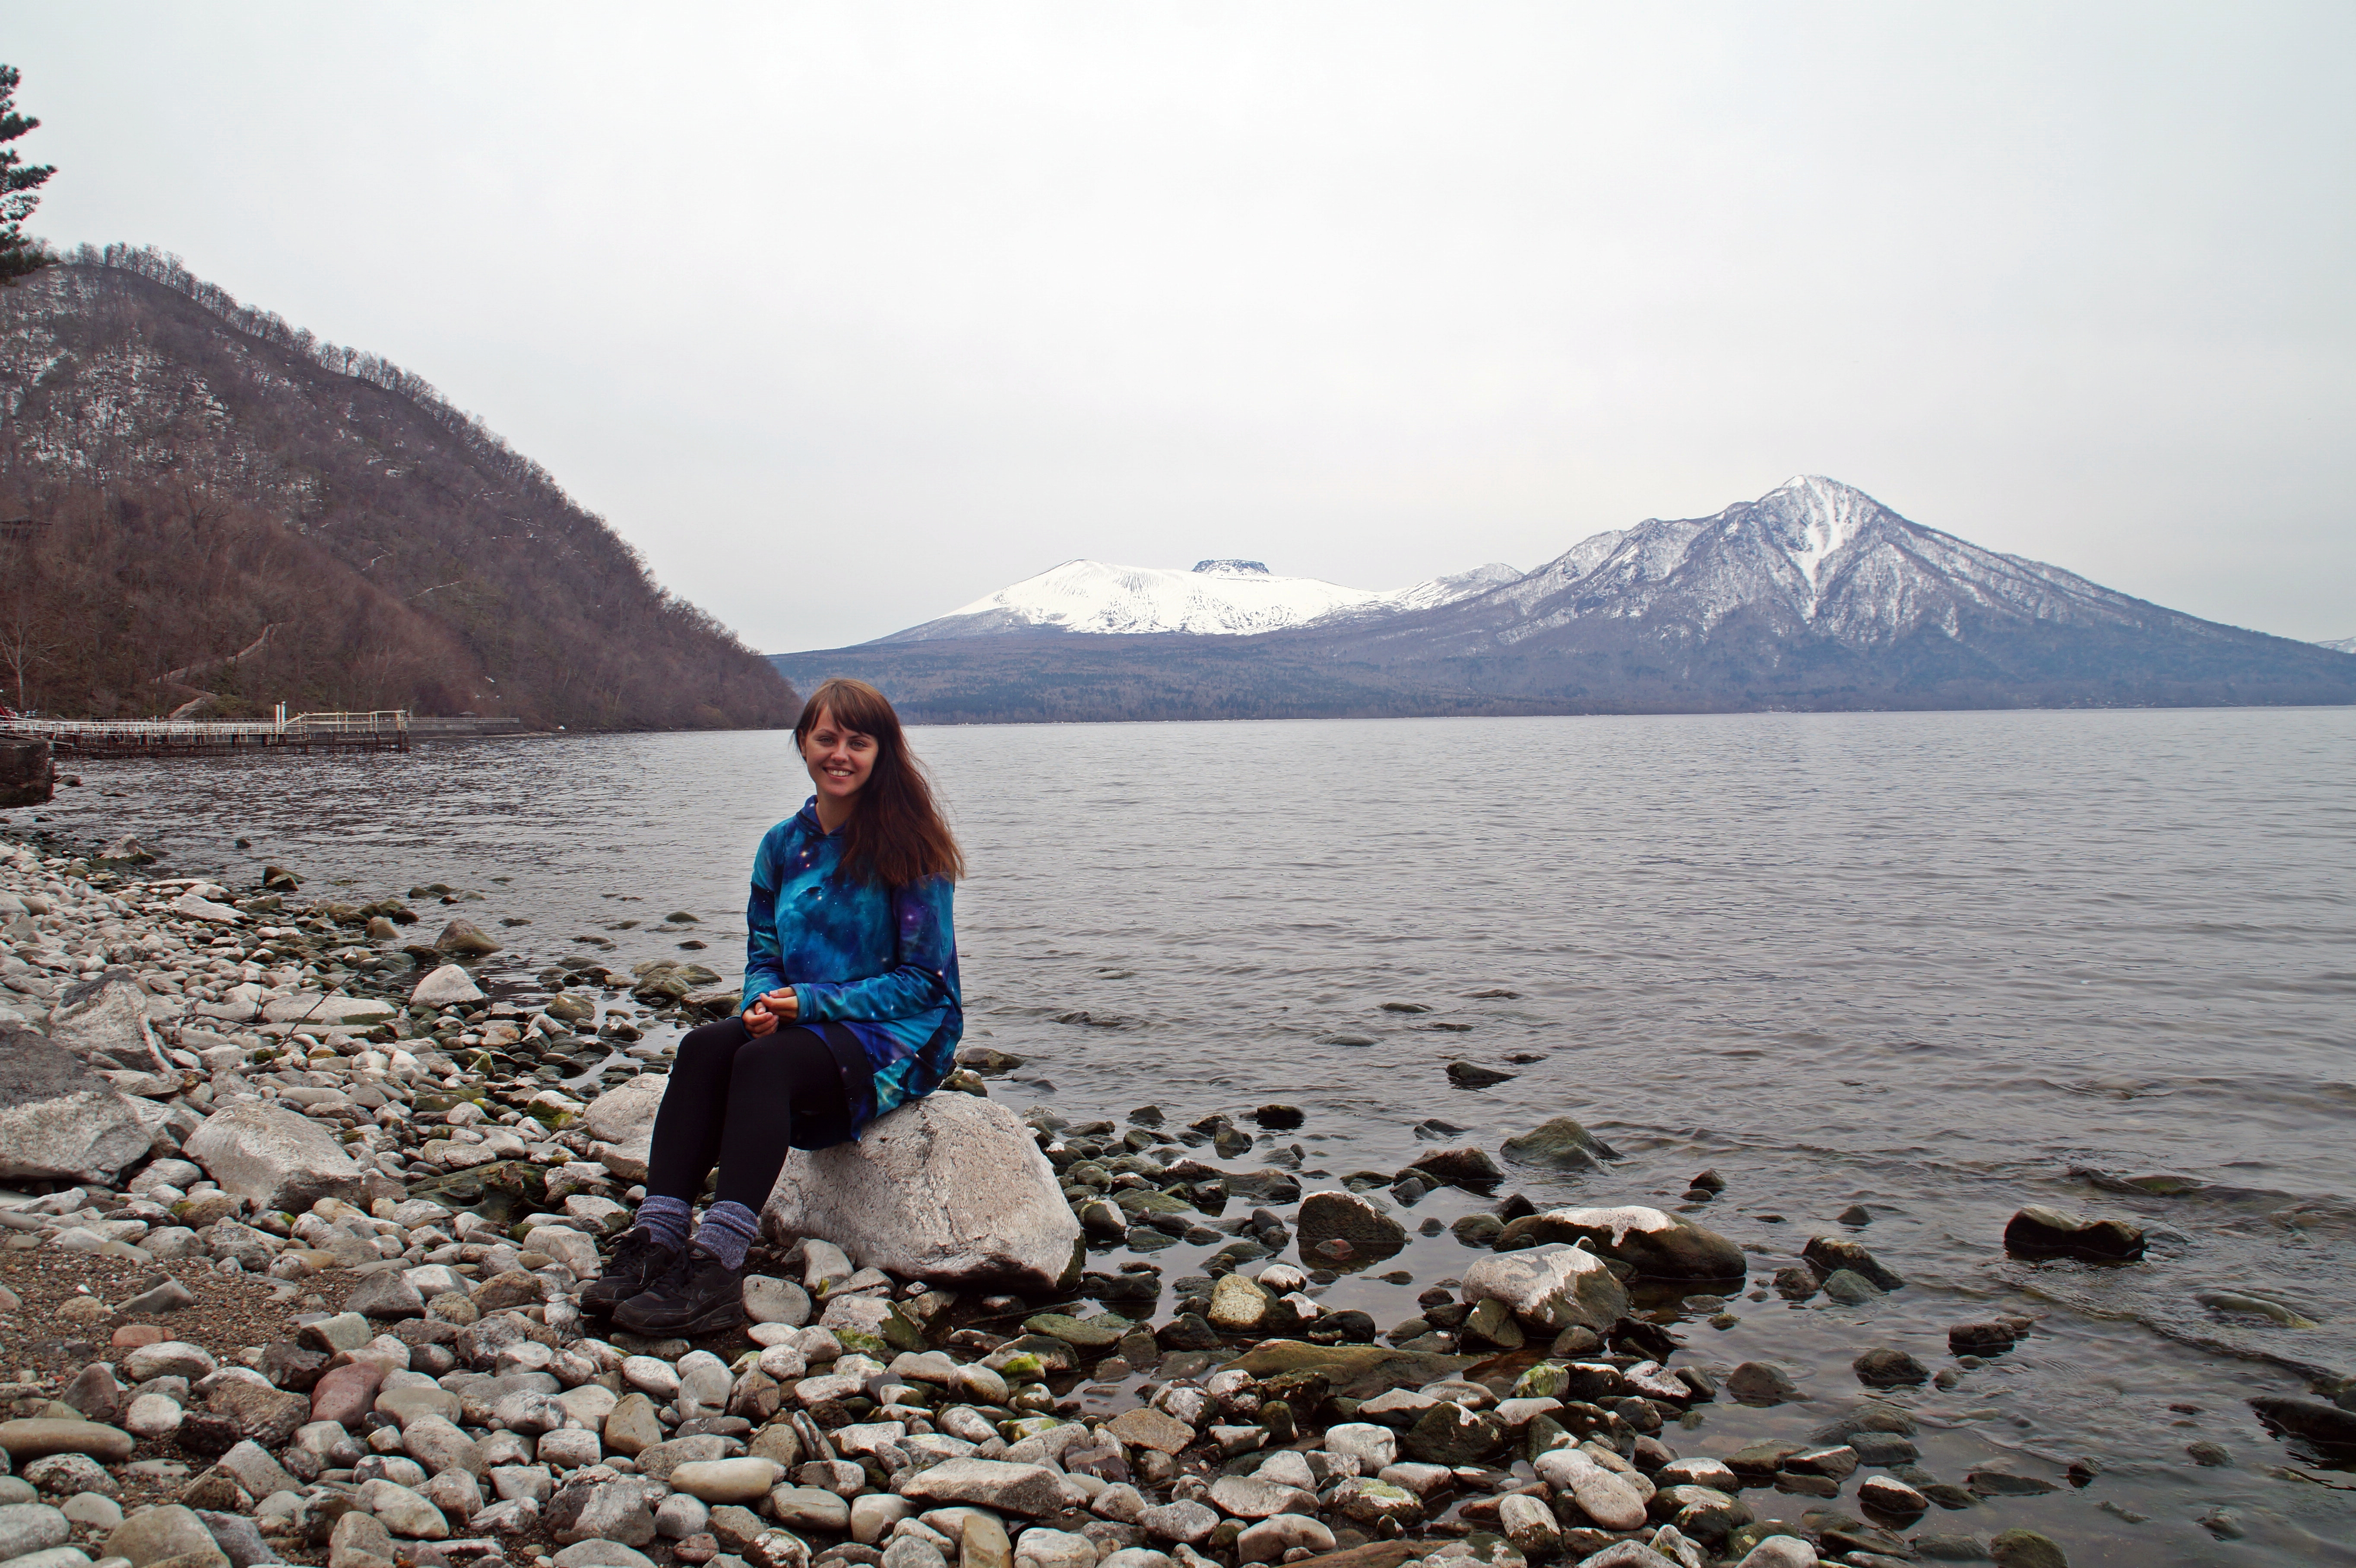 At Lake Shikotsu on Hokkaido